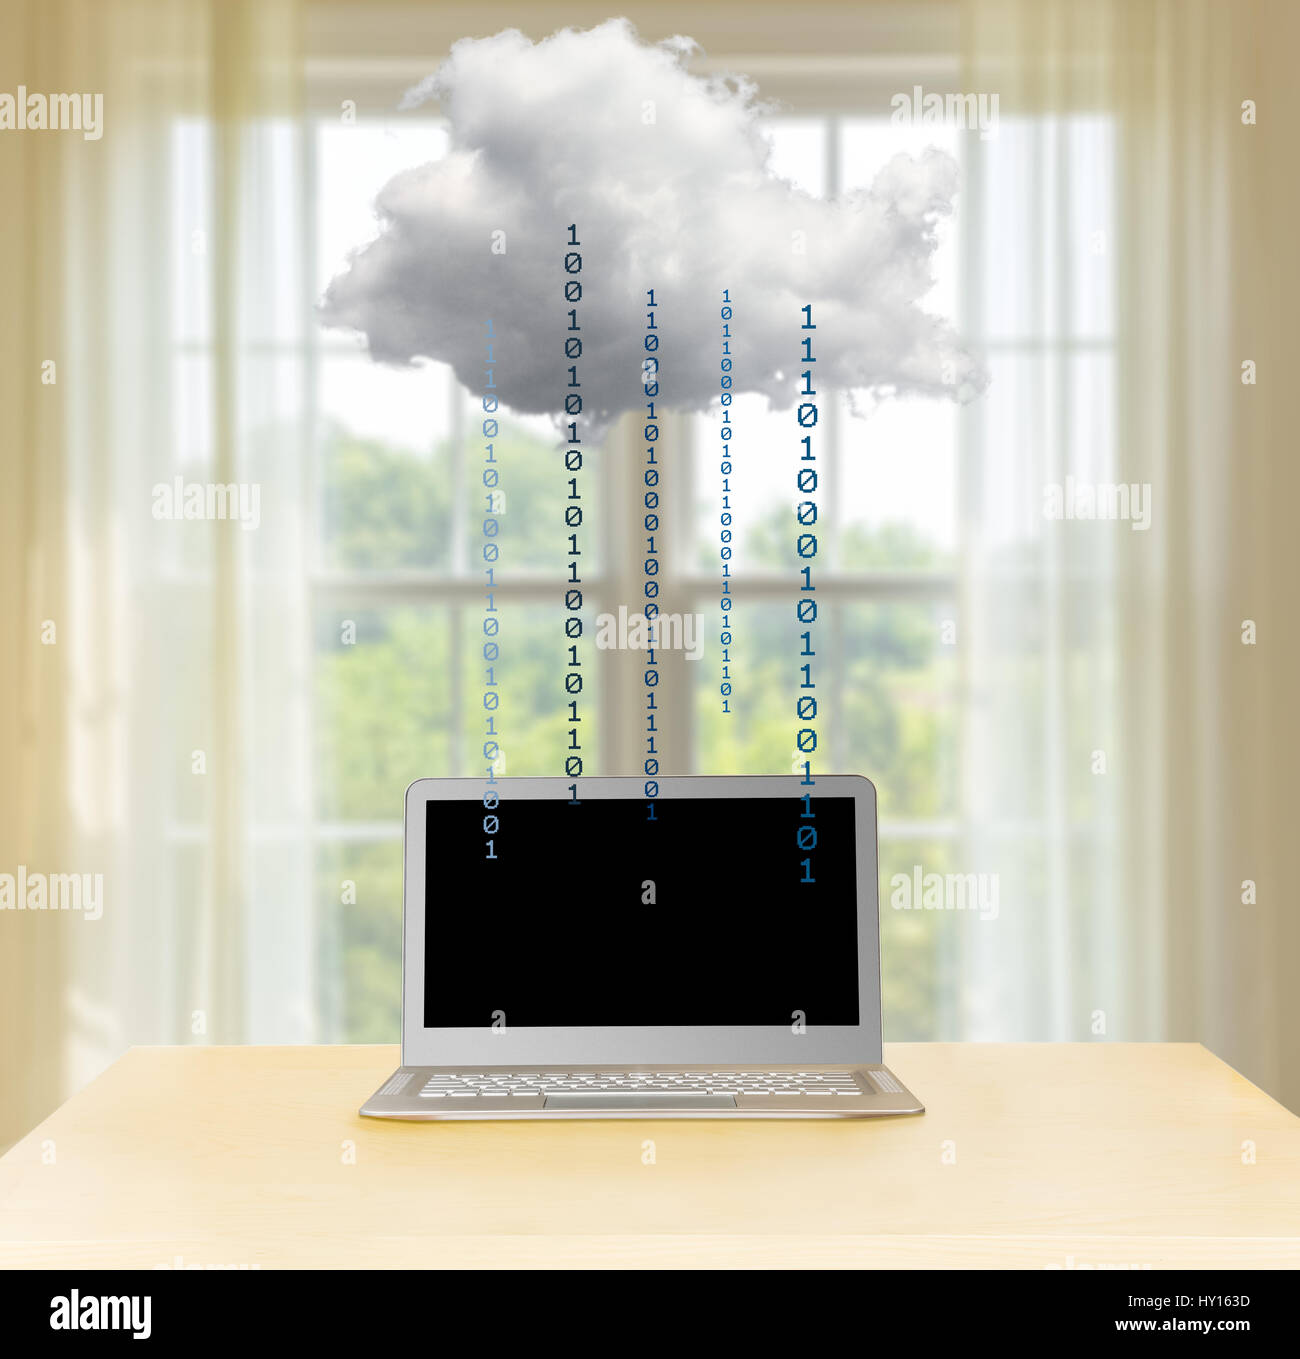 Personal cloud computing al concetto di casa - home computer portatile collegato ad applicazioni in cloud - dati i concetti di tecnologia Foto Stock